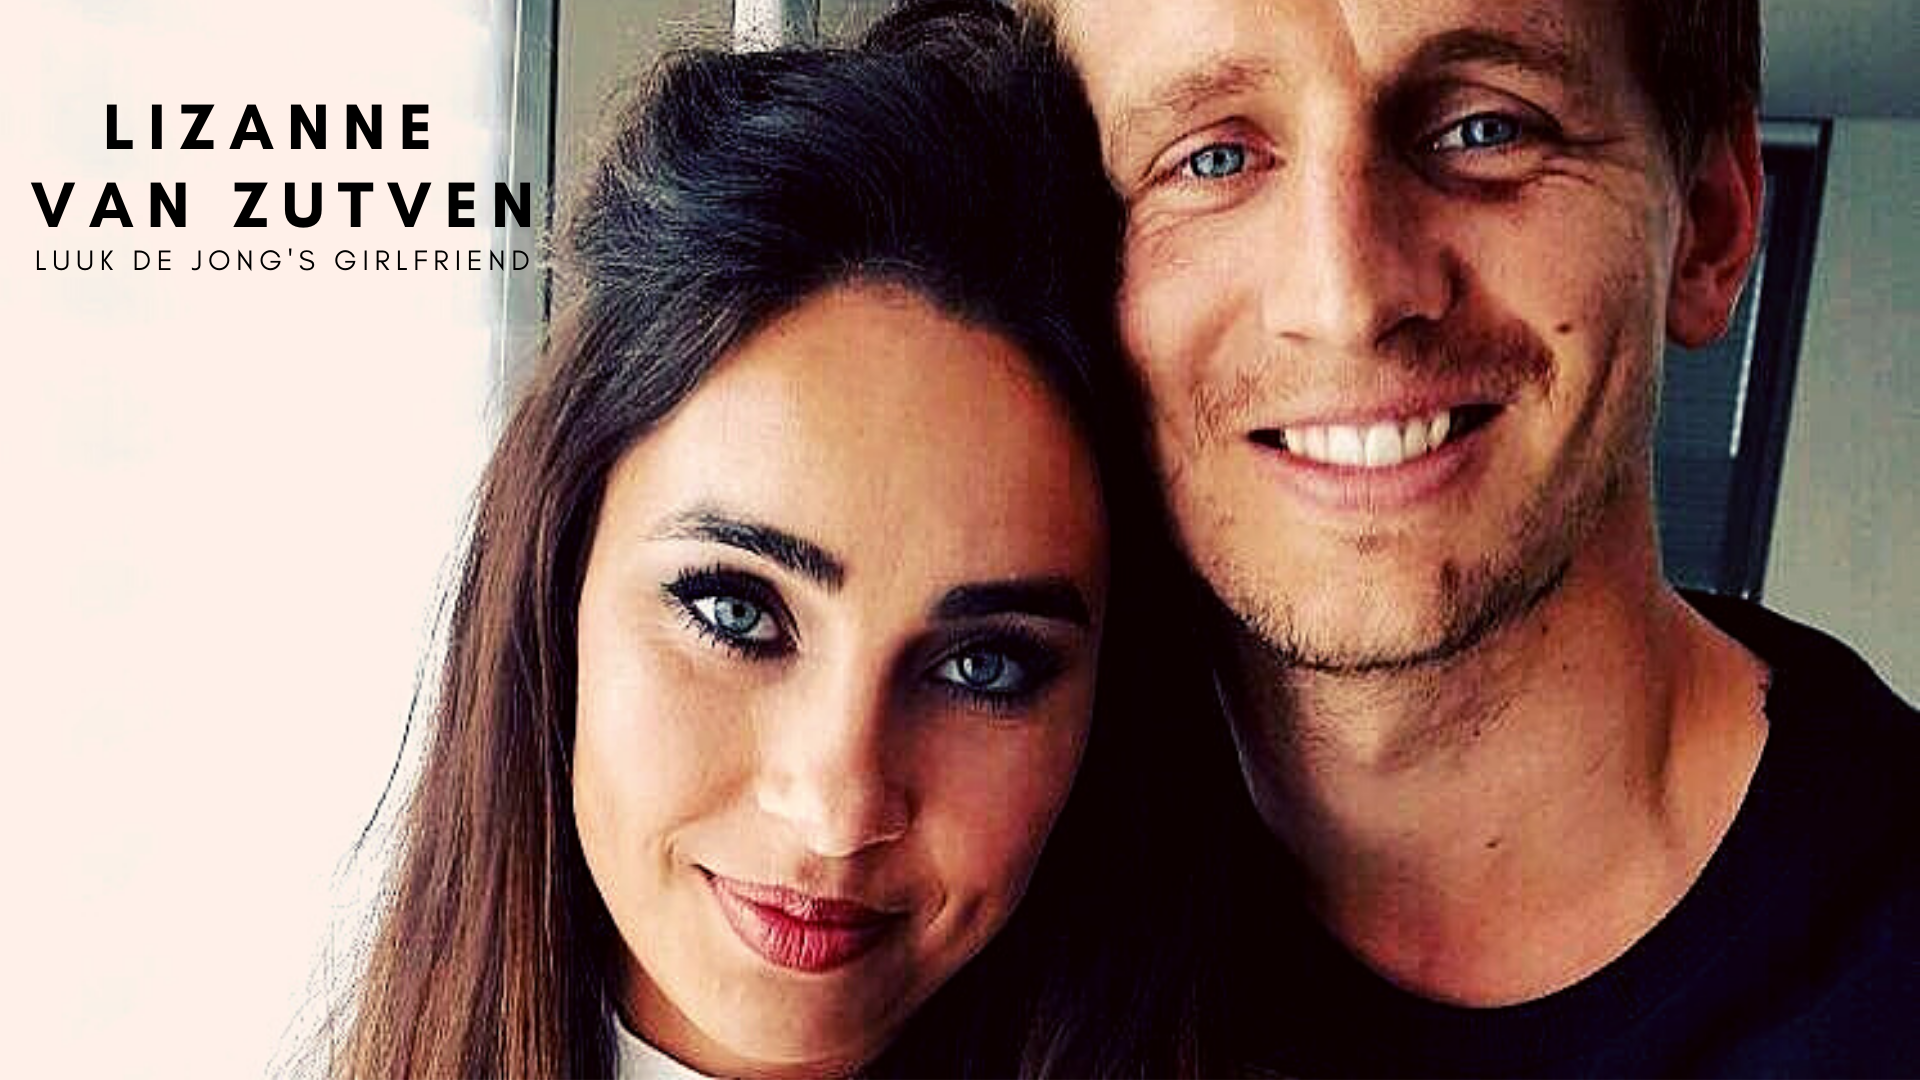 Luuk de Jong with girlfriend Lizanne van Zutven. (Credit: Instagram)